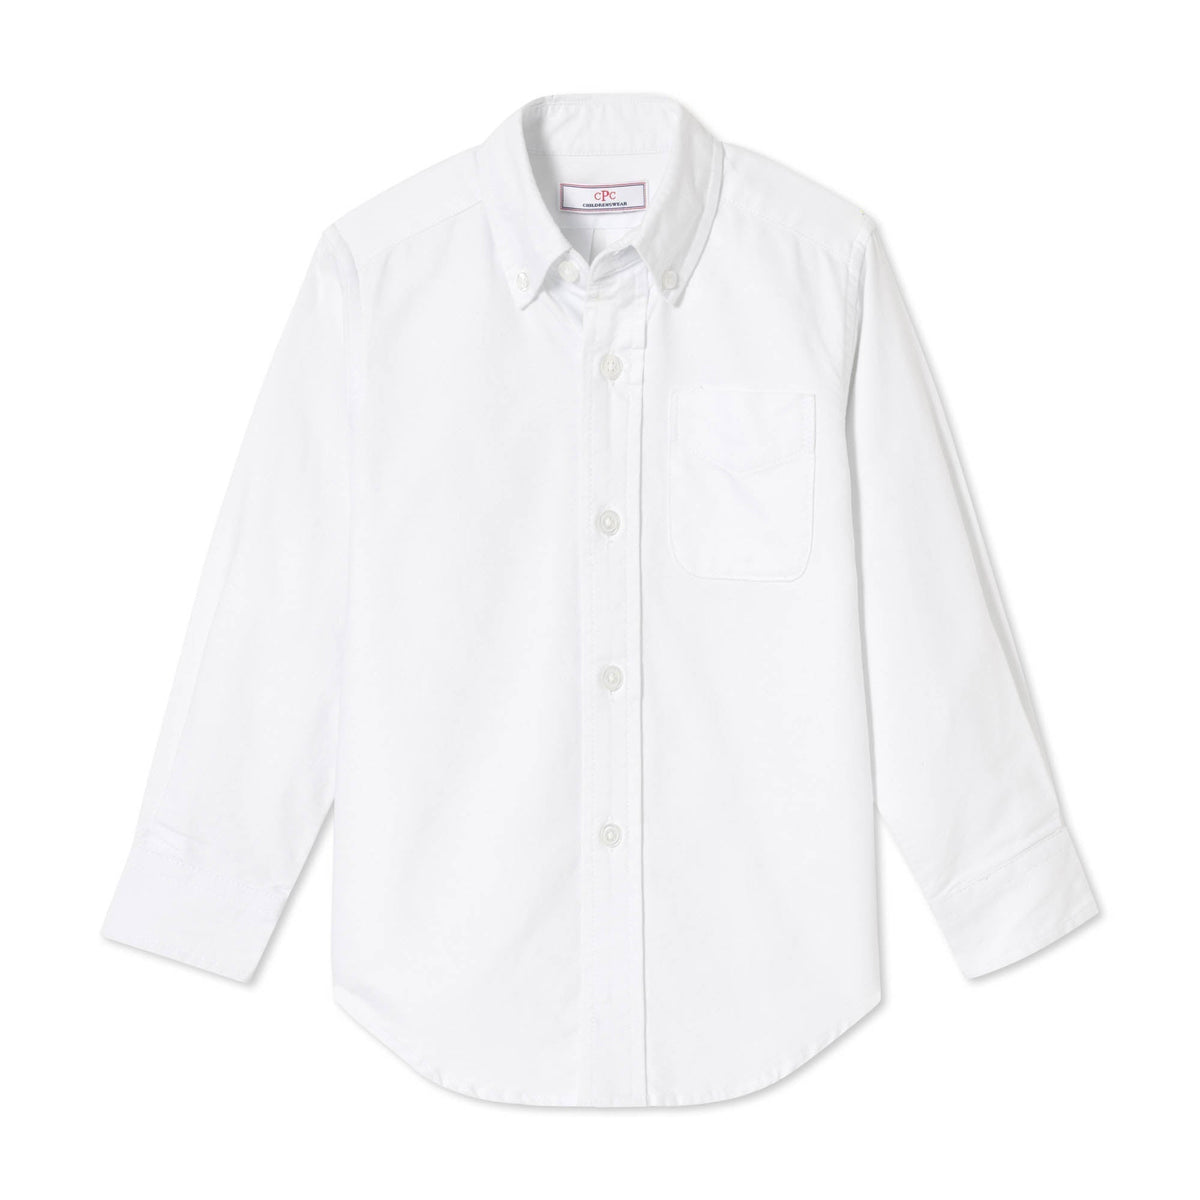 Classic and Preppy Owen Buttondown, Solid White Oxford-Shirts and Tops-Solid White Oxford-2T-CPC - Classic Prep Childrenswear